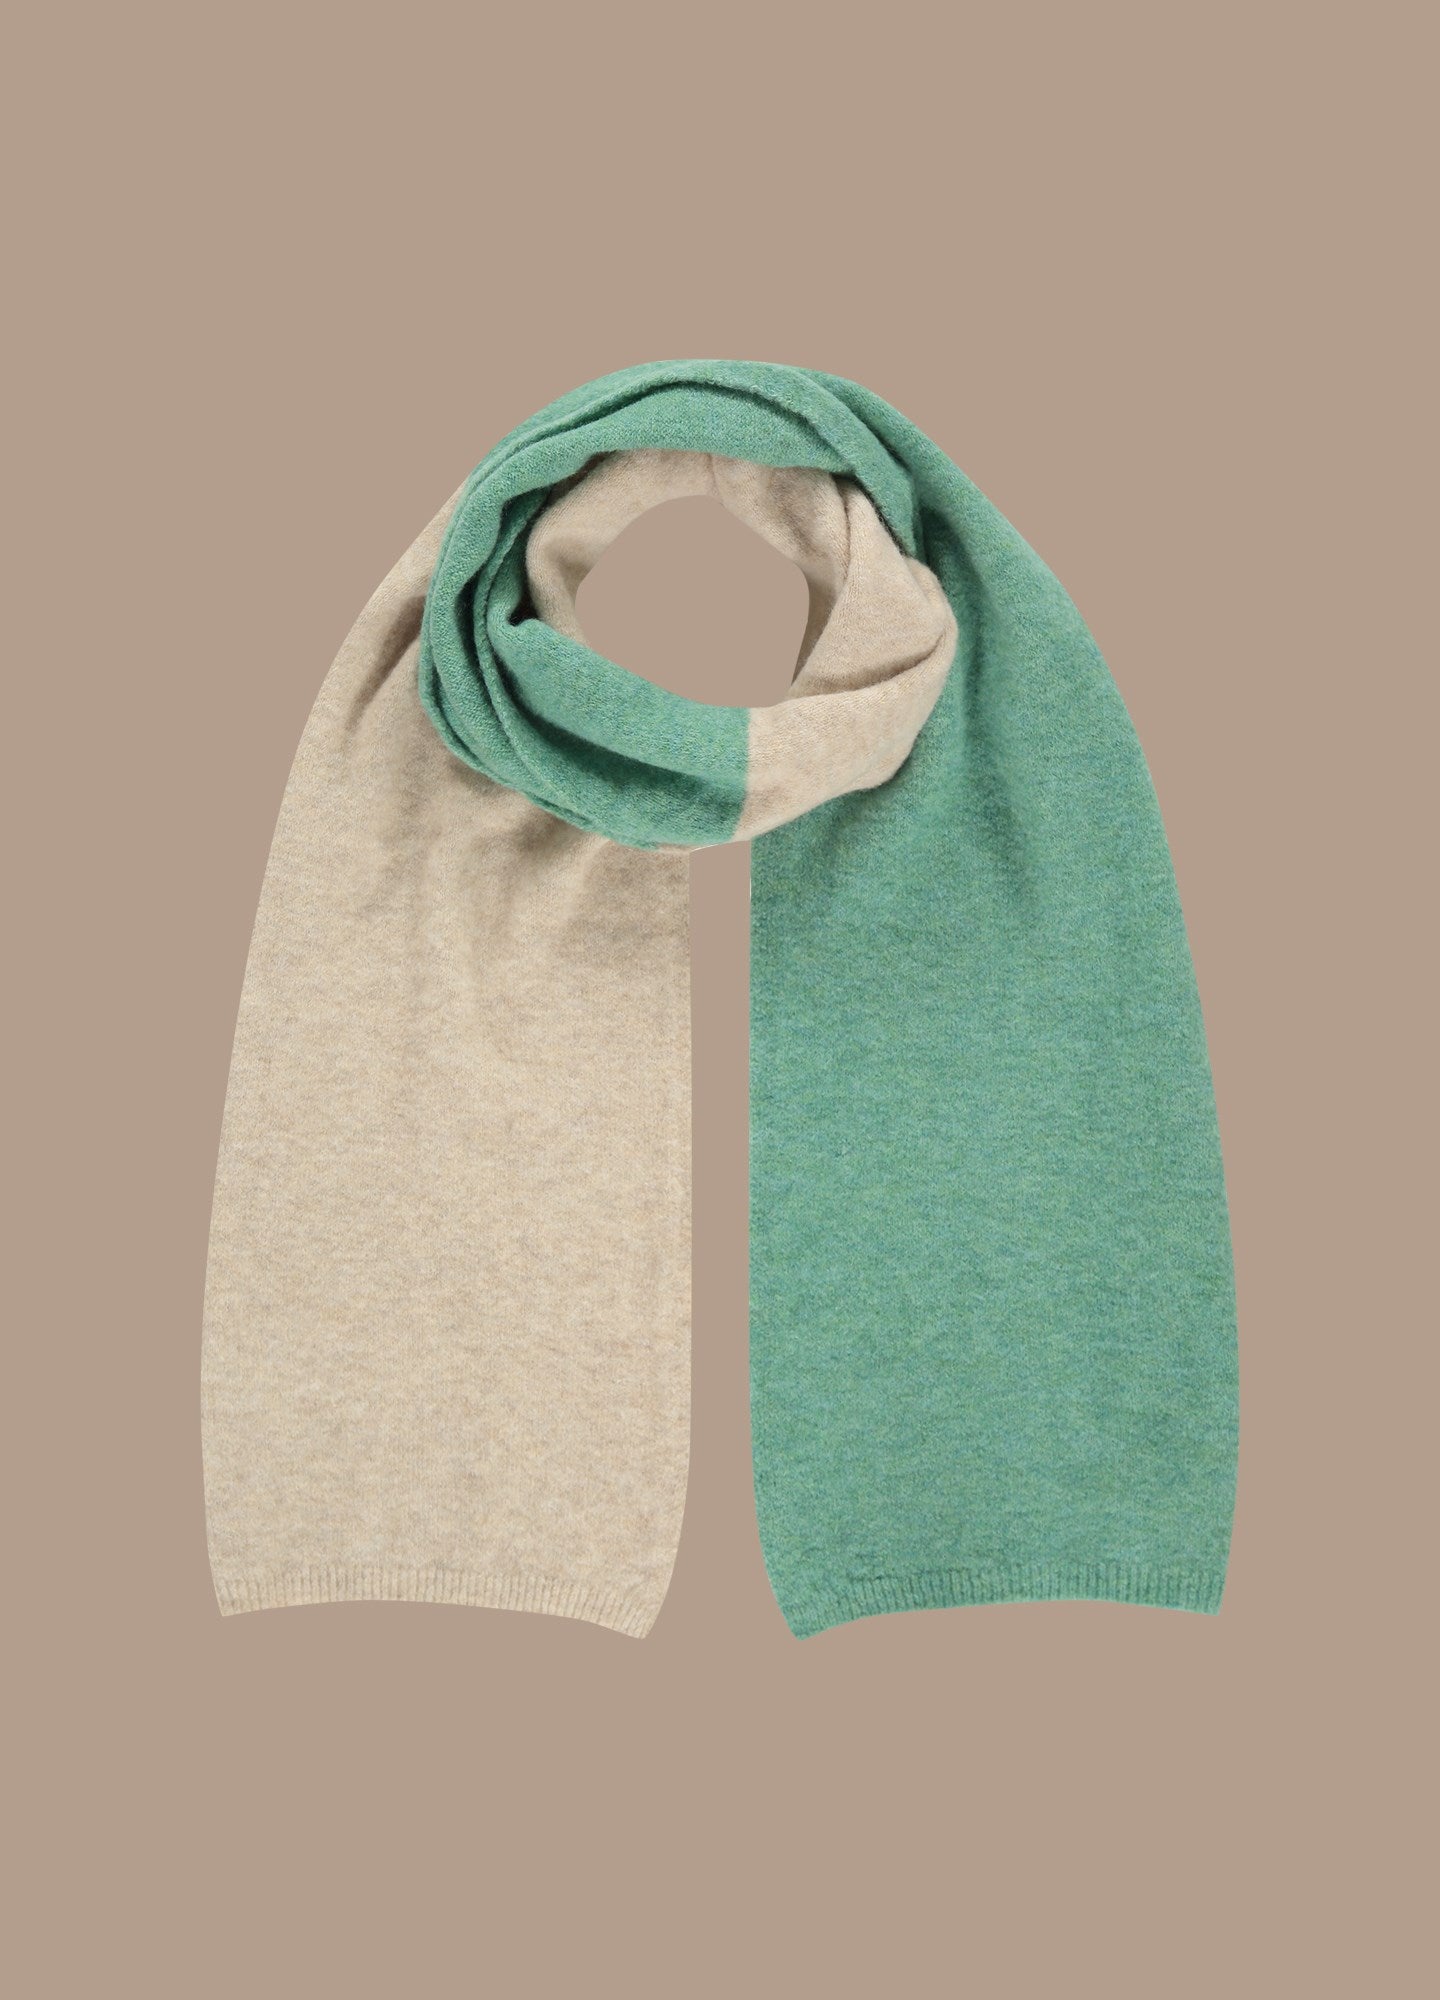 Tone-tone scarf